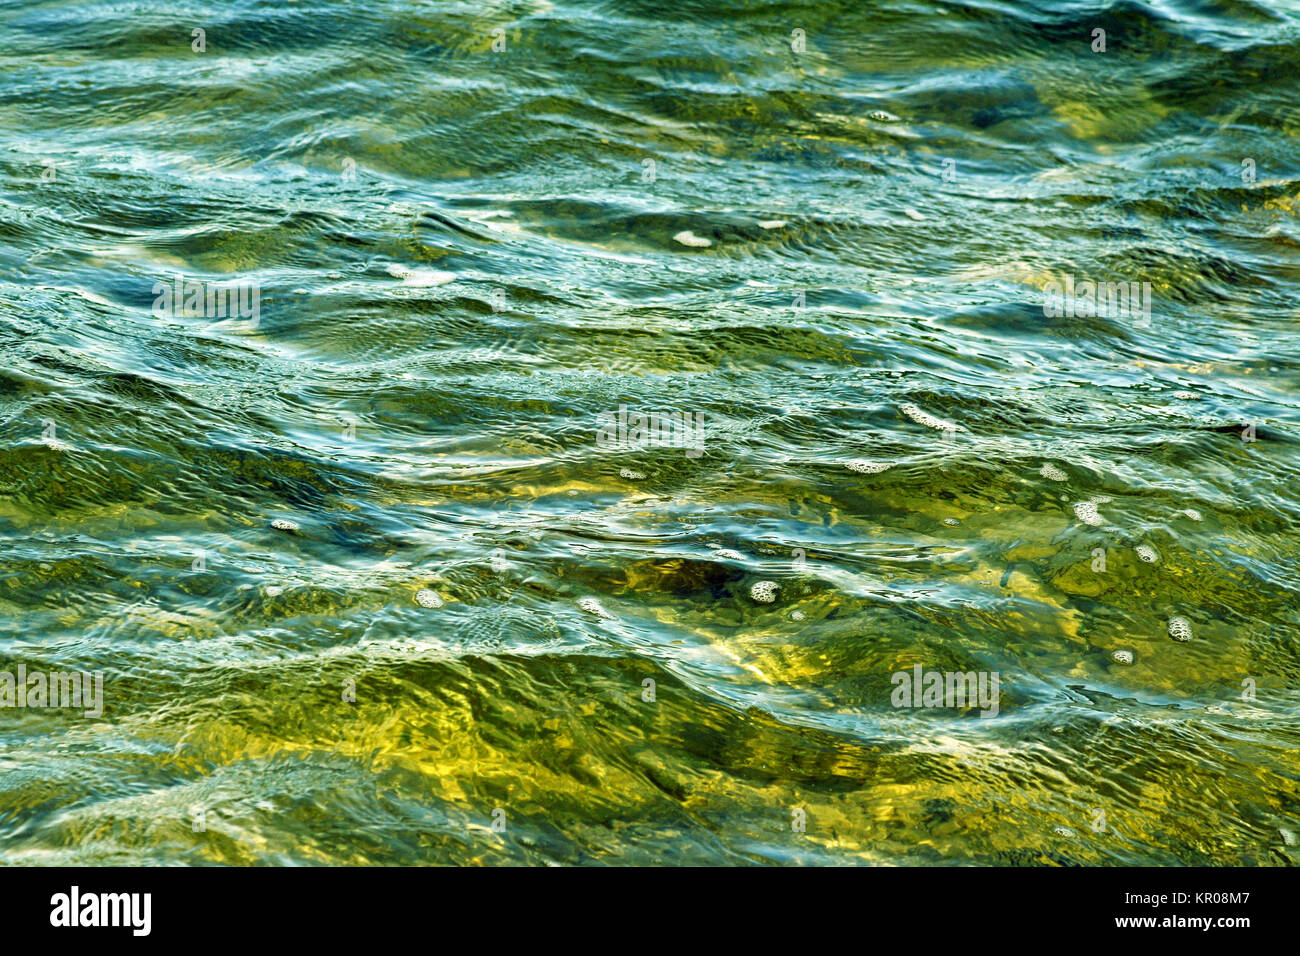 Belle acque verde smeraldo con morbide ondulazioni sulla superficie Foto Stock